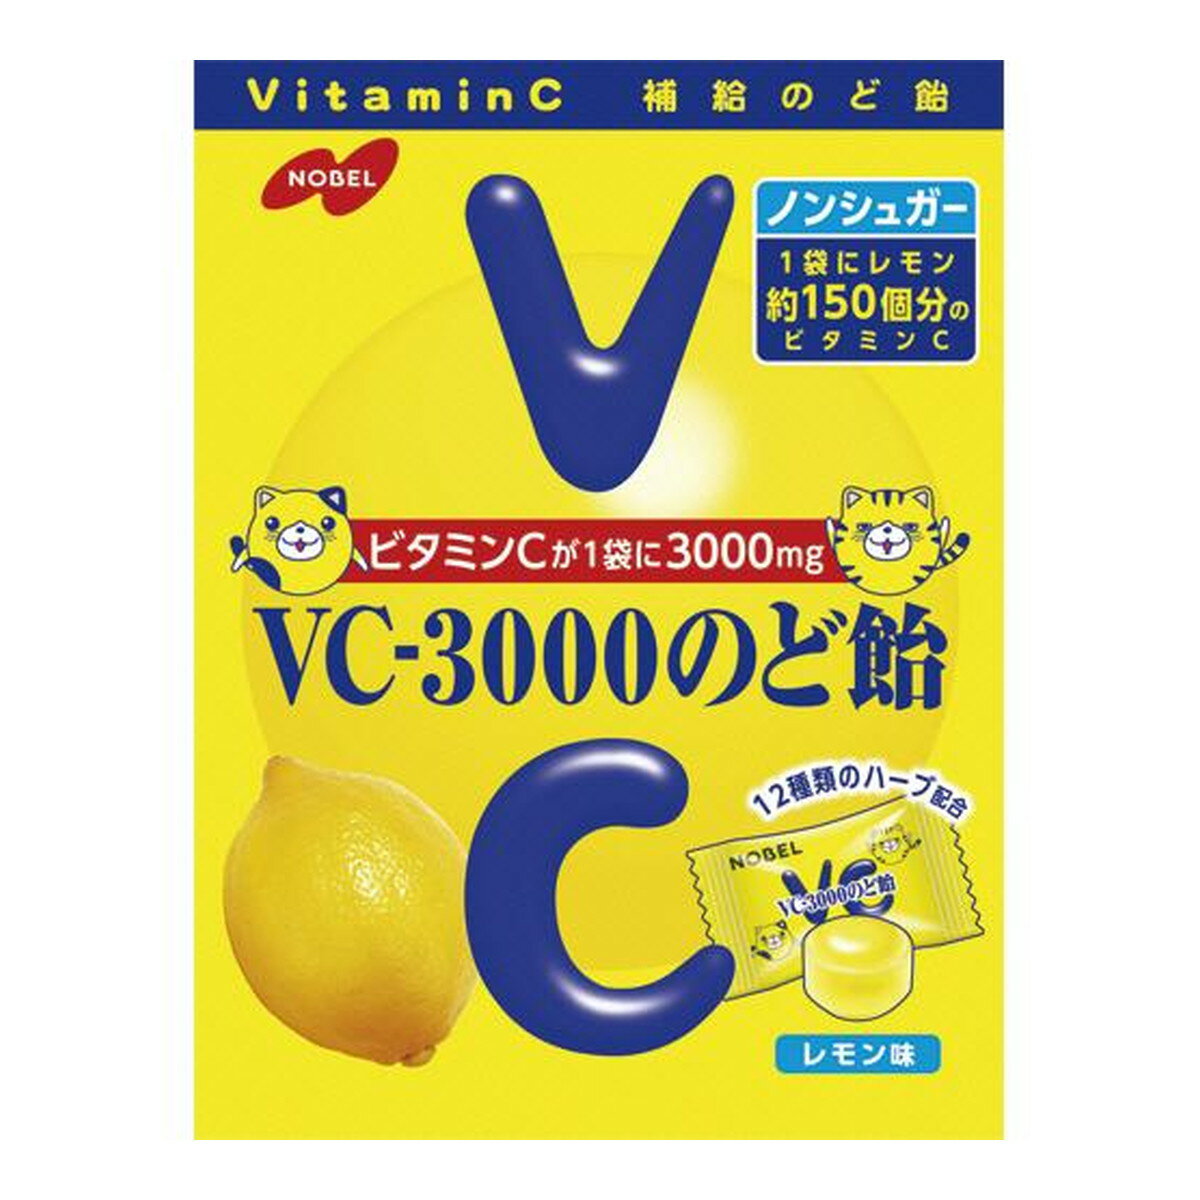 商品名：ノーベル製菓 VC-3000のど飴 90g レモン味内容量：90gJANコード：4902124025159発売元、製造元、輸入元又は販売元：ノーベル製菓株式会社原産国：日本商品番号：103-4902124025159商品説明1袋にビタミンC3000mg（レモン果汁150個分）と、ペパーミント・セージ・タイムなど12種類の配合ハーブとカリンエキスが入った、ノンシュガーで、カロリーが気になる方にもうれしいヘルシータイプです。広告文責：アットライフ株式会社TEL 050-3196-1510 ※商品パッケージは変更の場合あり。メーカー欠品または完売の際、キャンセルをお願いすることがあります。ご了承ください。